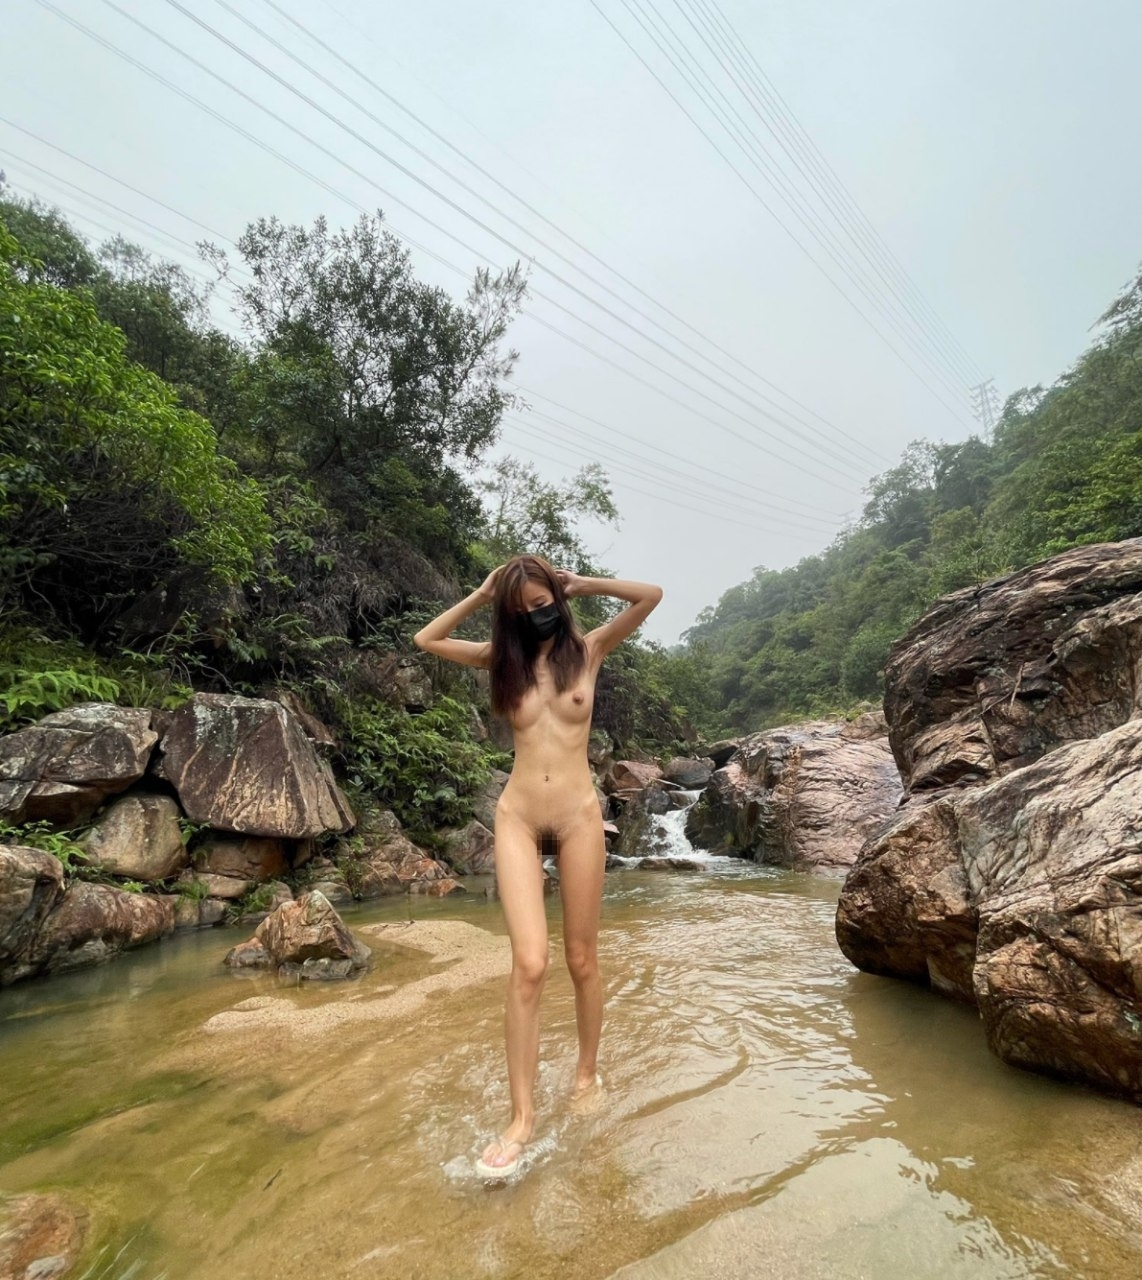 山で全裸になるスレンダー美女の野外露出ヌード画像 4